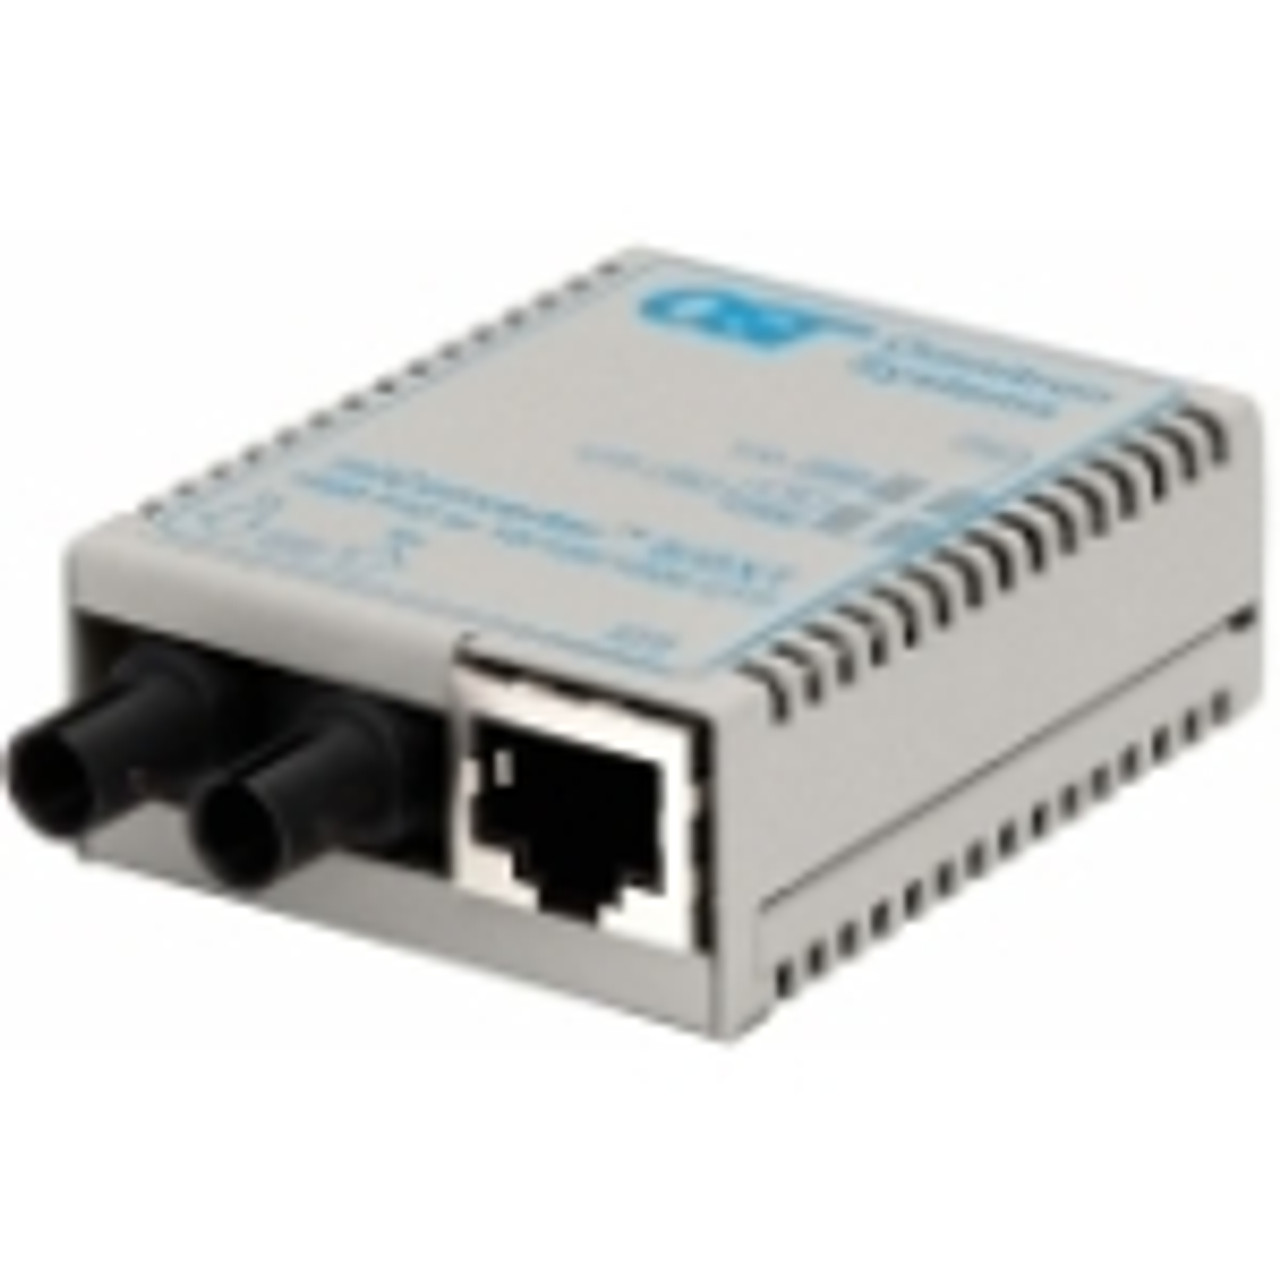 1620-0-6 miConverter/S 10/100/1000 Gigabit Ethernet Fiber Media Converter RJ45 ST Multimode 550m 1 x 10/100/1000BASE-T; 1 x 1000BASE-SX; USB Powered;